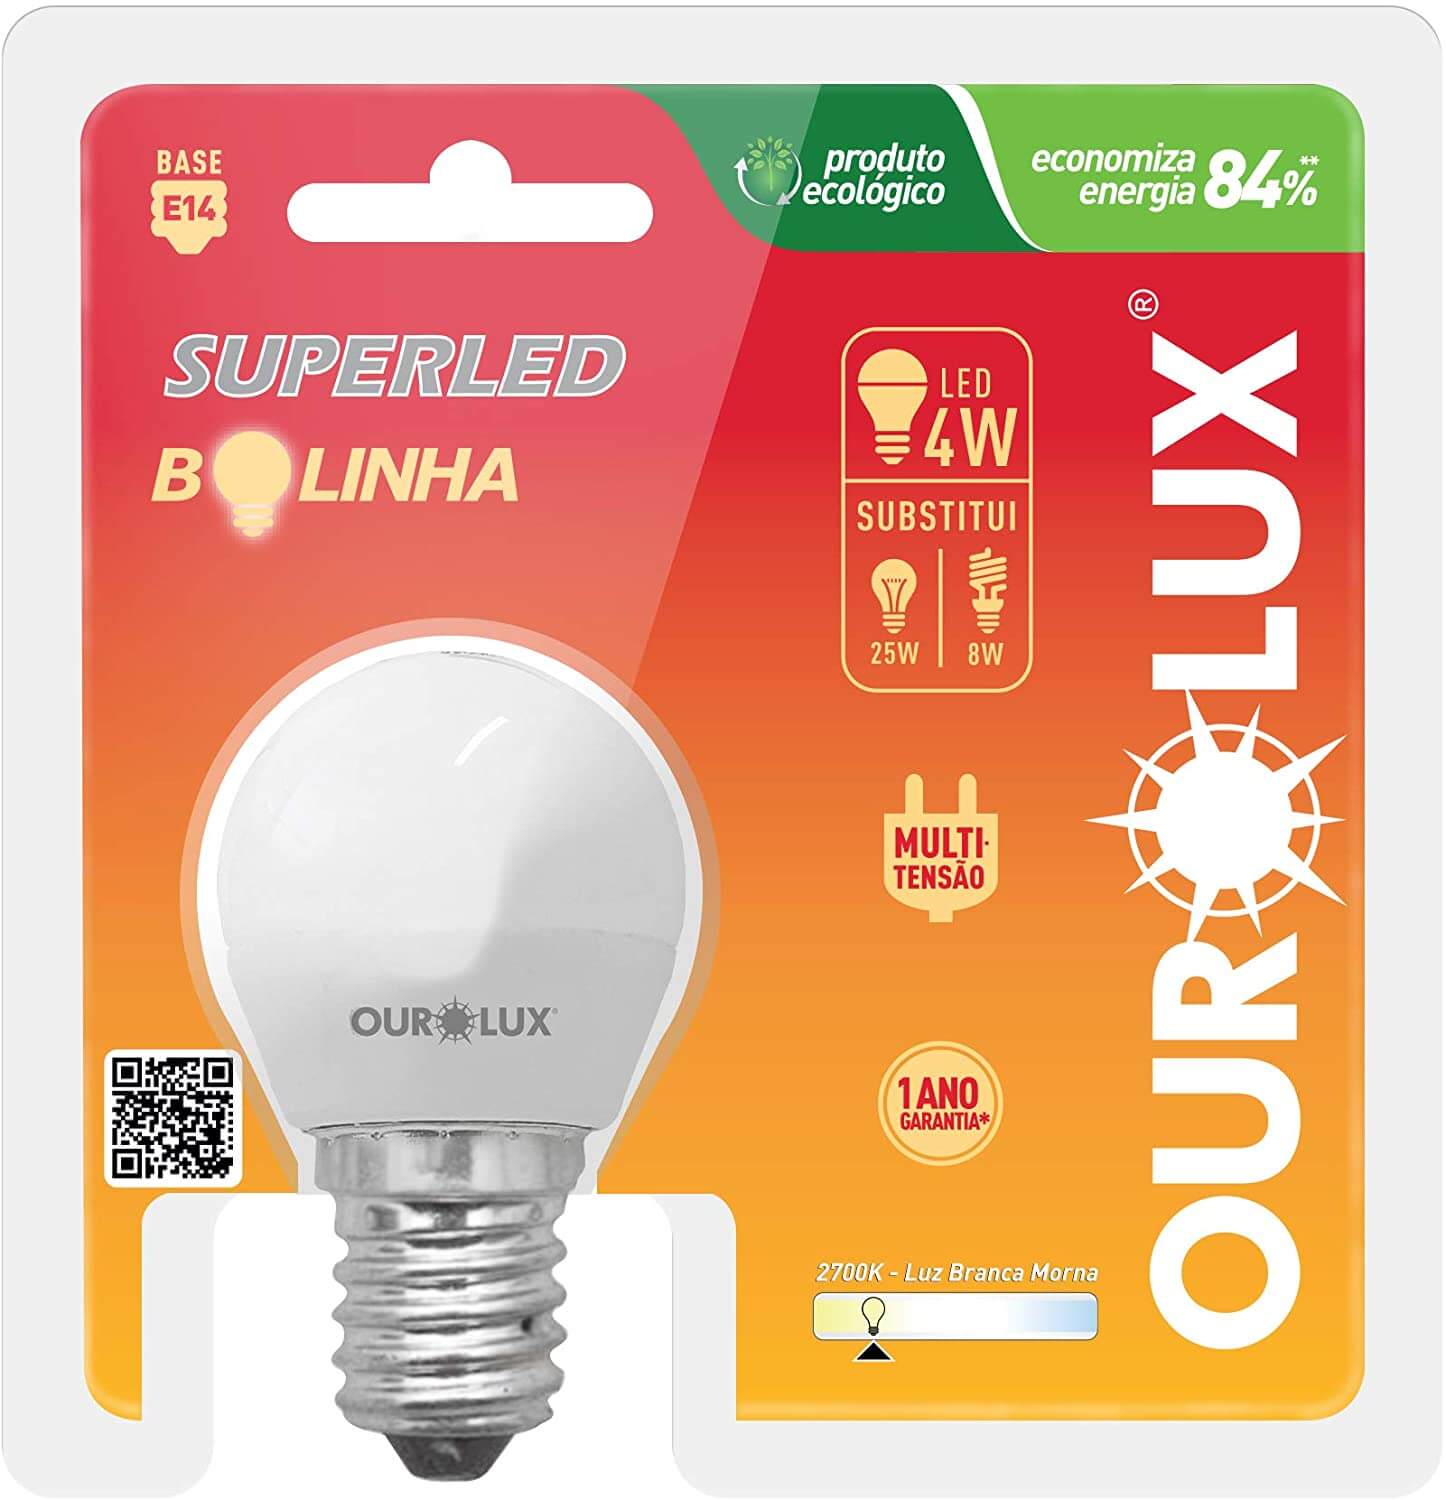 Lampada-SuperLed-Bolinha-4w-BiVolts-2700k---OUROLUX